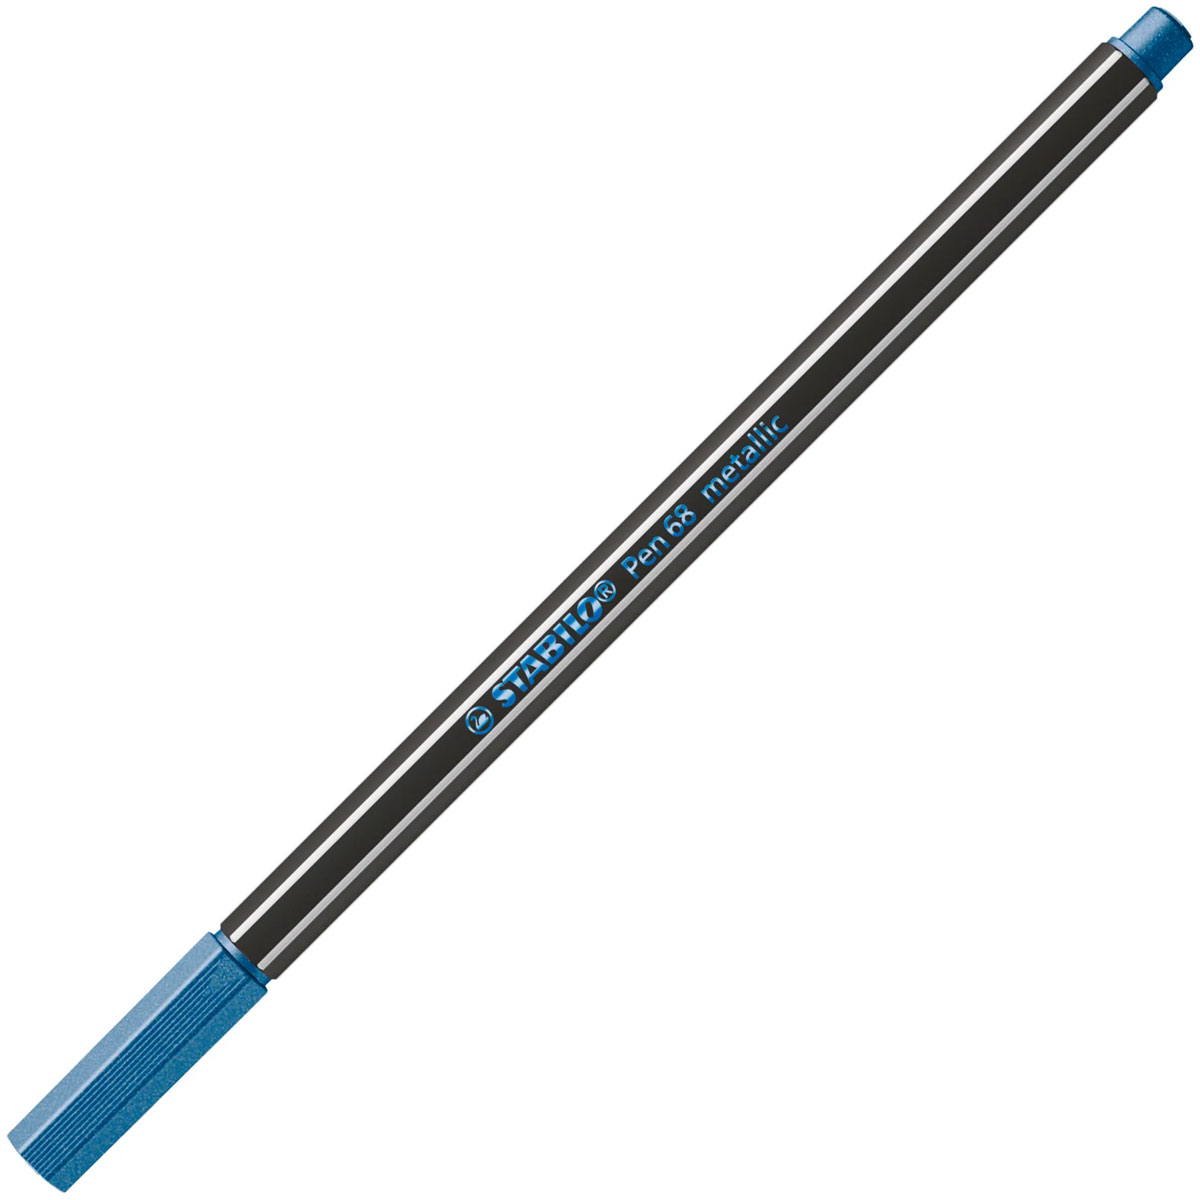 STABILO - Stabilo Pen 68 Μαρκαδόρος Σχεδίου 1.4 mm Μεταλλικό Μπλε - Stabilo 68 Metallic Blue 841 68/841